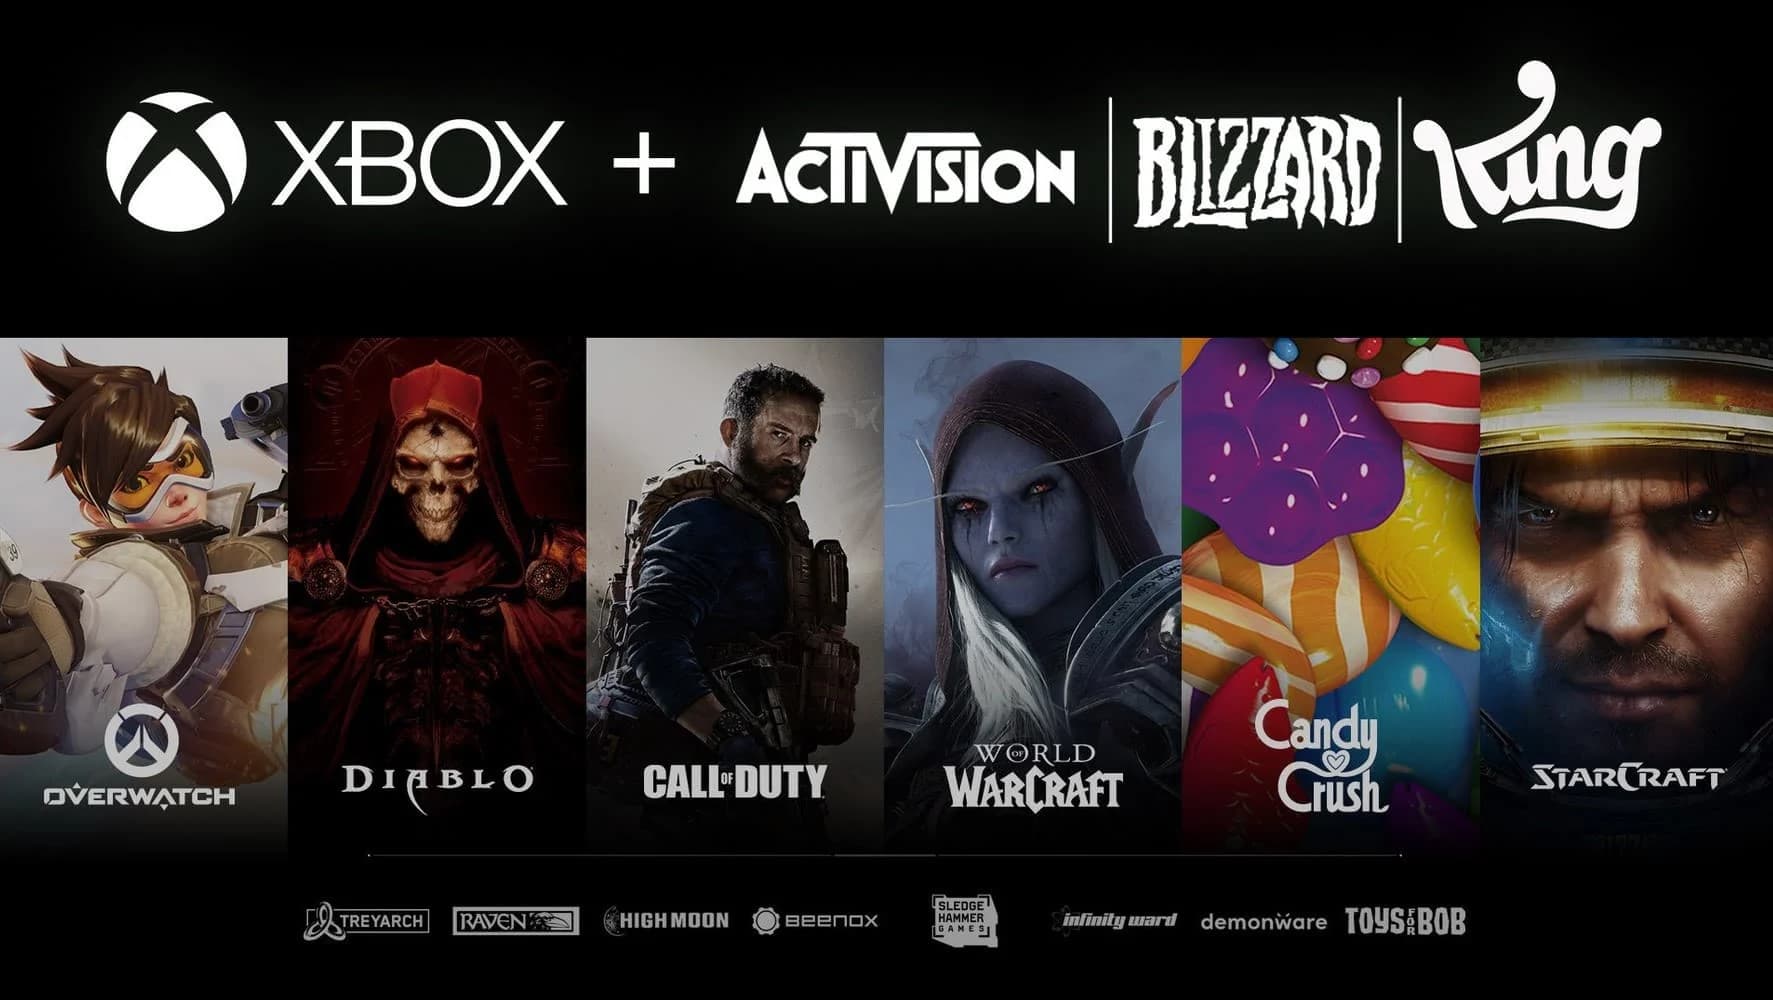 CMA amplia prazo da decisão de compra da Activision Blizzard